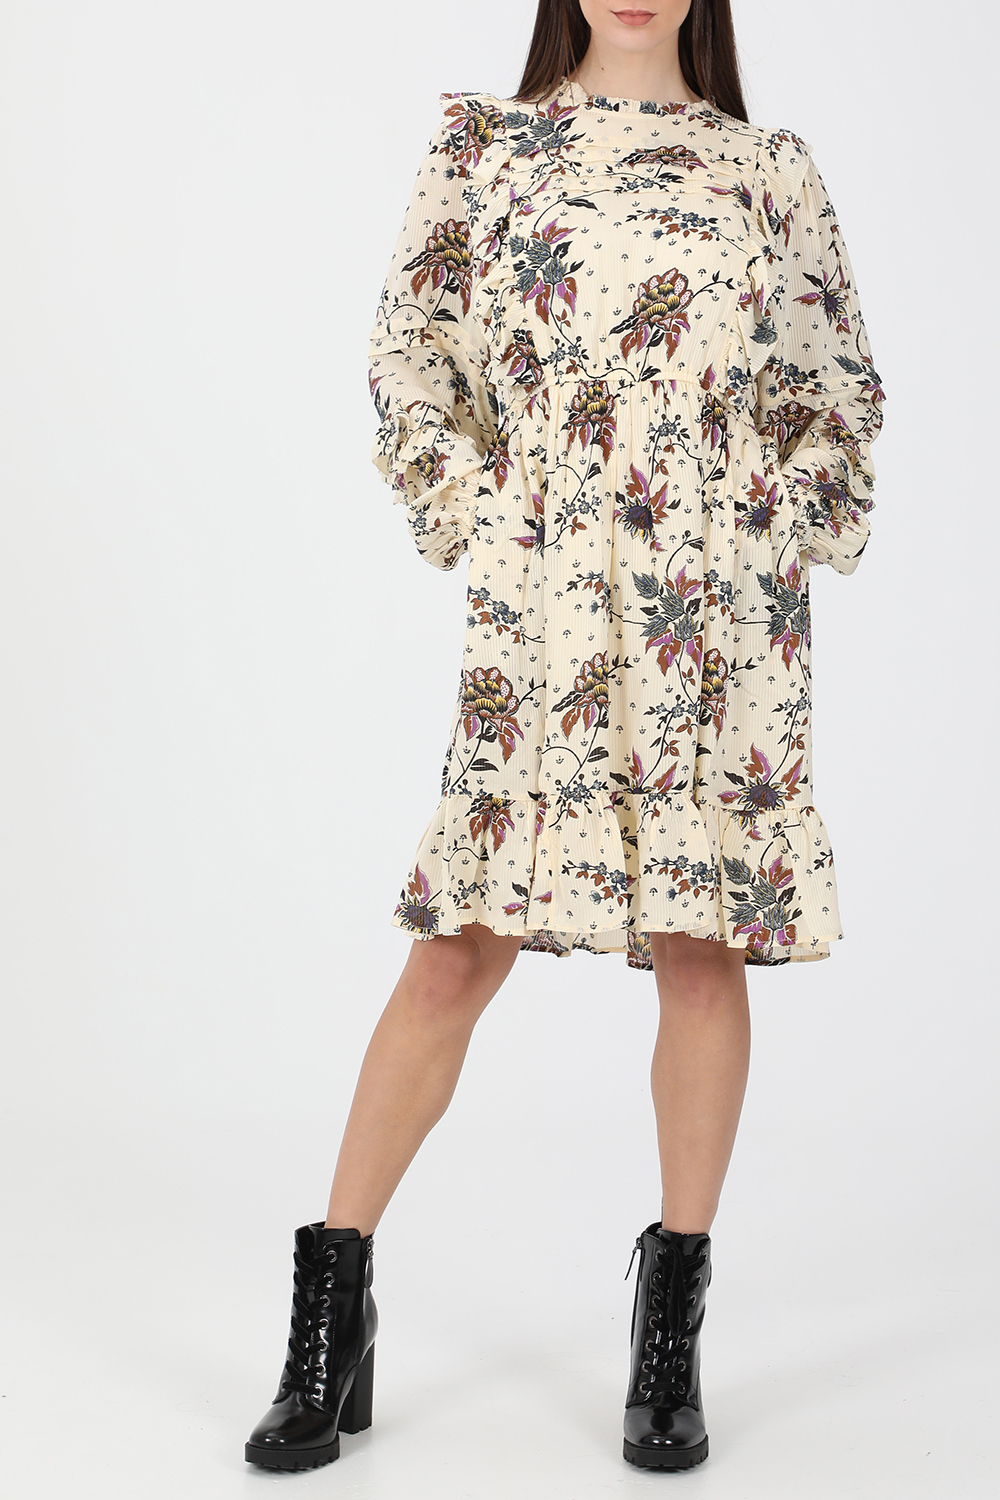 Γυναικεία/Ρούχα/Φόρεματα/Μίνι SCOTCH & SODA - Γυναικείο mini φόρεμα SCOTCH & SODA Printed ruffle dress εκρού floral